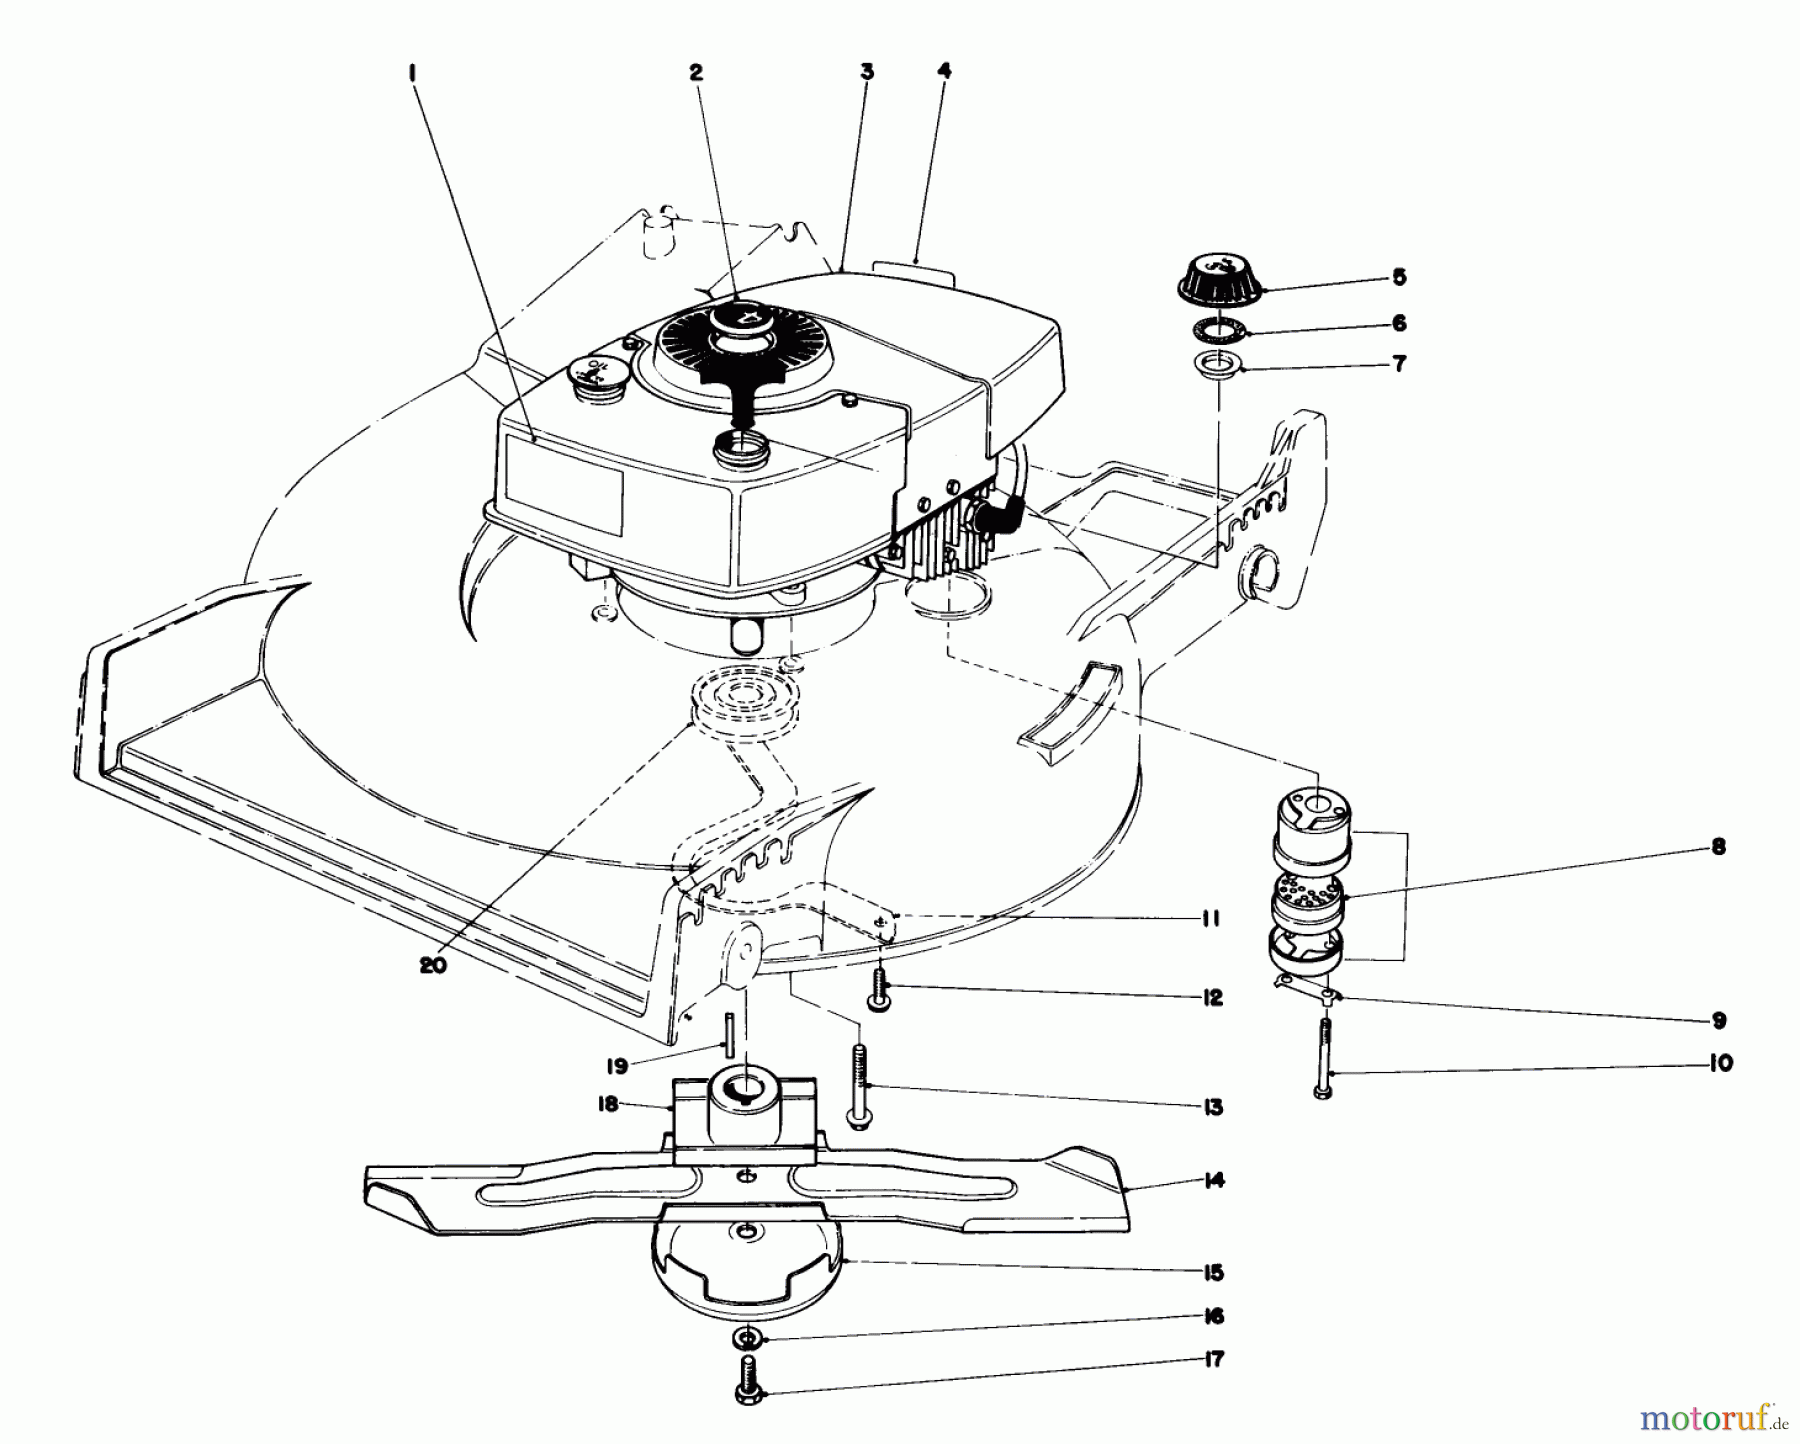  Toro Neu Mowers, Walk-Behind Seite 1 20705 - Toro Lawnmower, 1982 (2000001-2999999) ENGINE ASSEMBLY